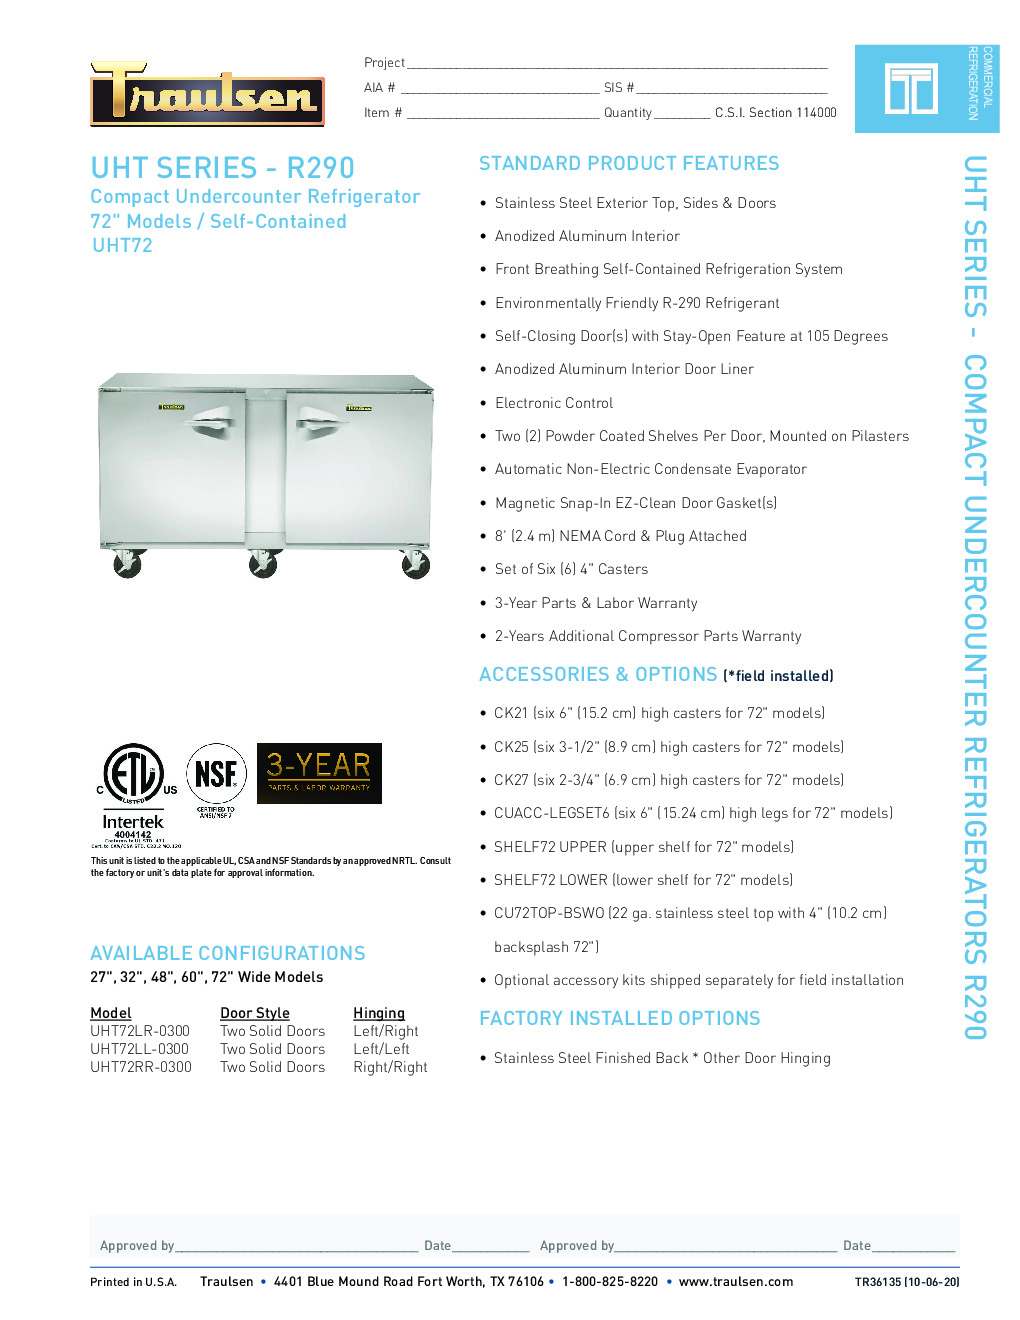 Traulsen UHT72LR-0300-SB Reach-In Undercounter Refrigerator